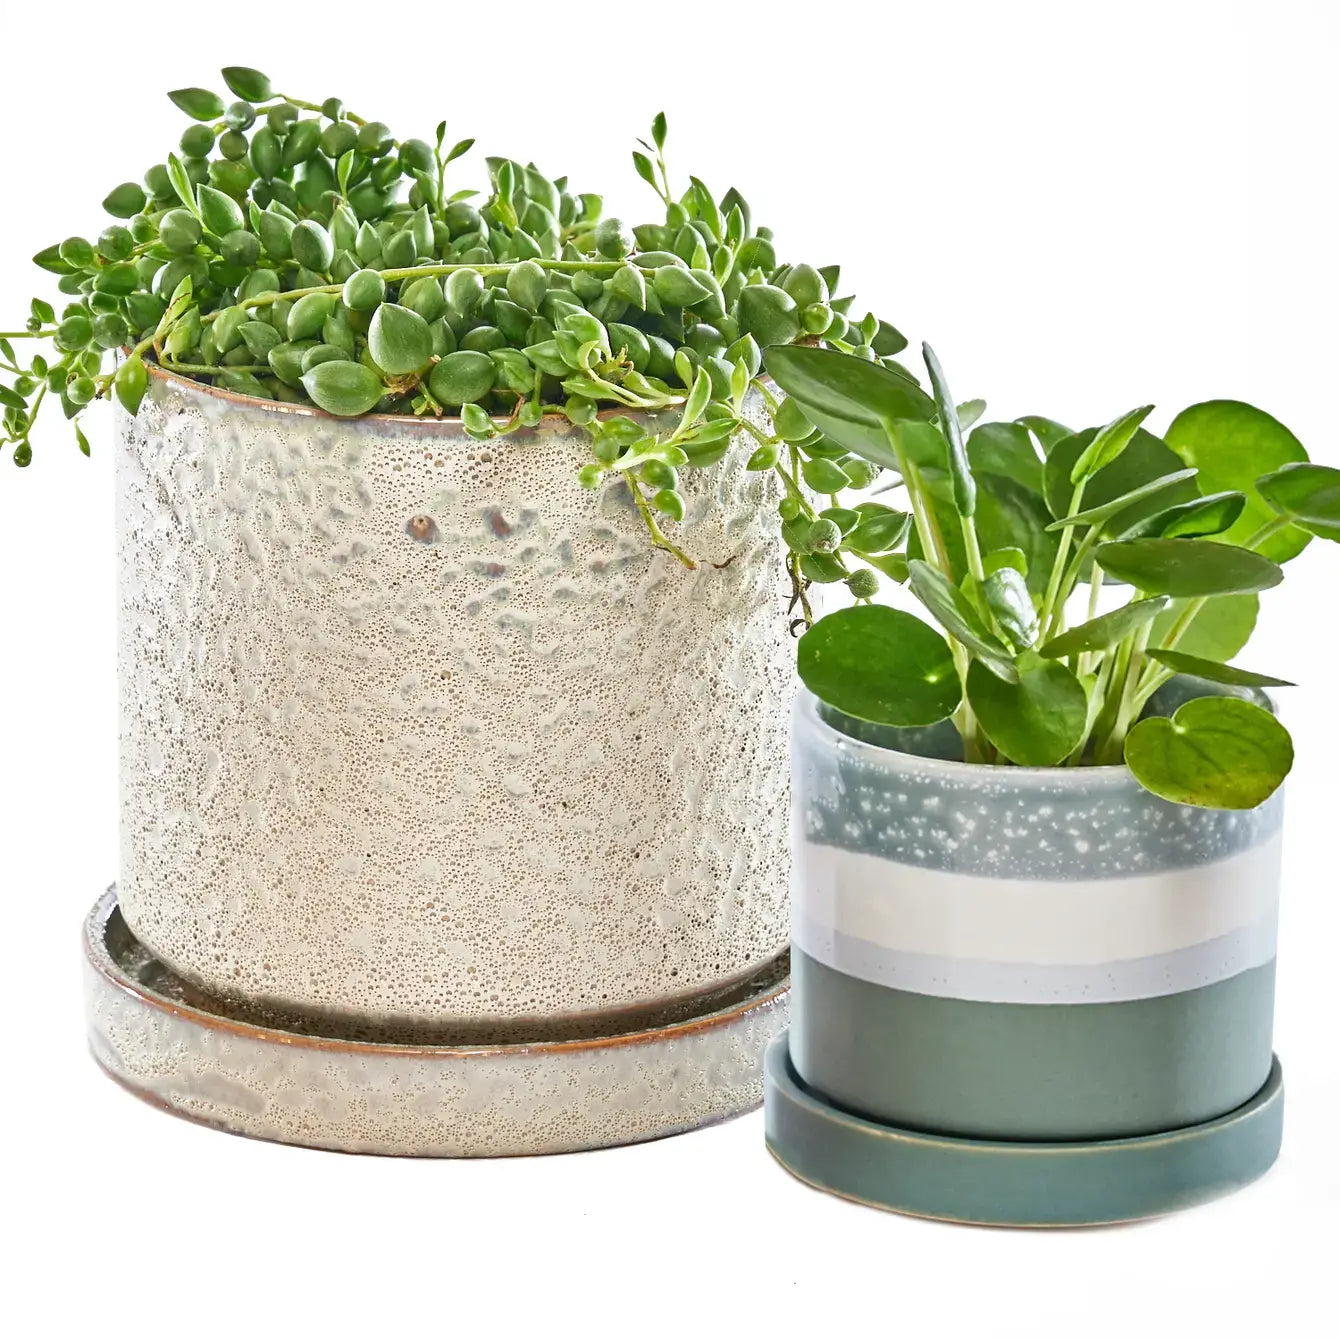 Chive - Minute Ceramic Plant Pots Indoor: Boombastic / 5"